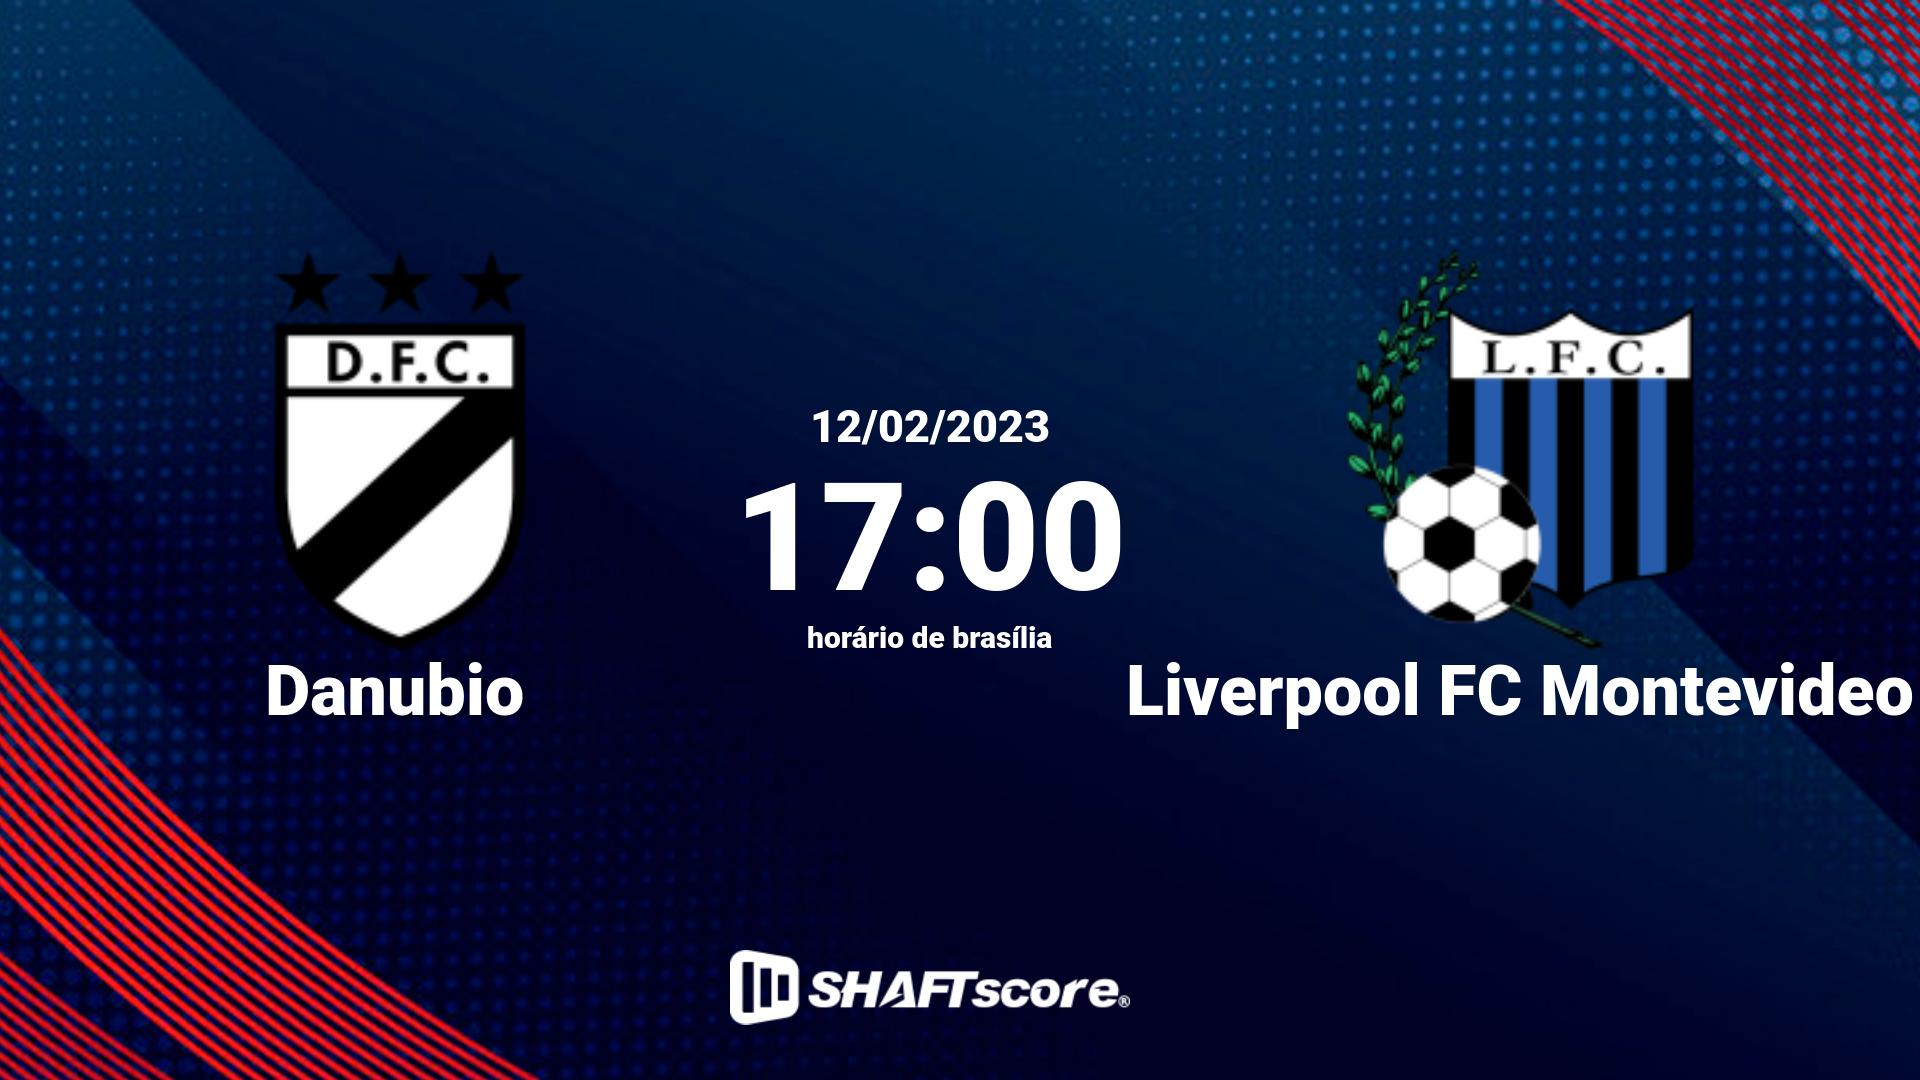 Estatísticas do jogo Danubio vs Liverpool FC Montevideo 12.02 17:00